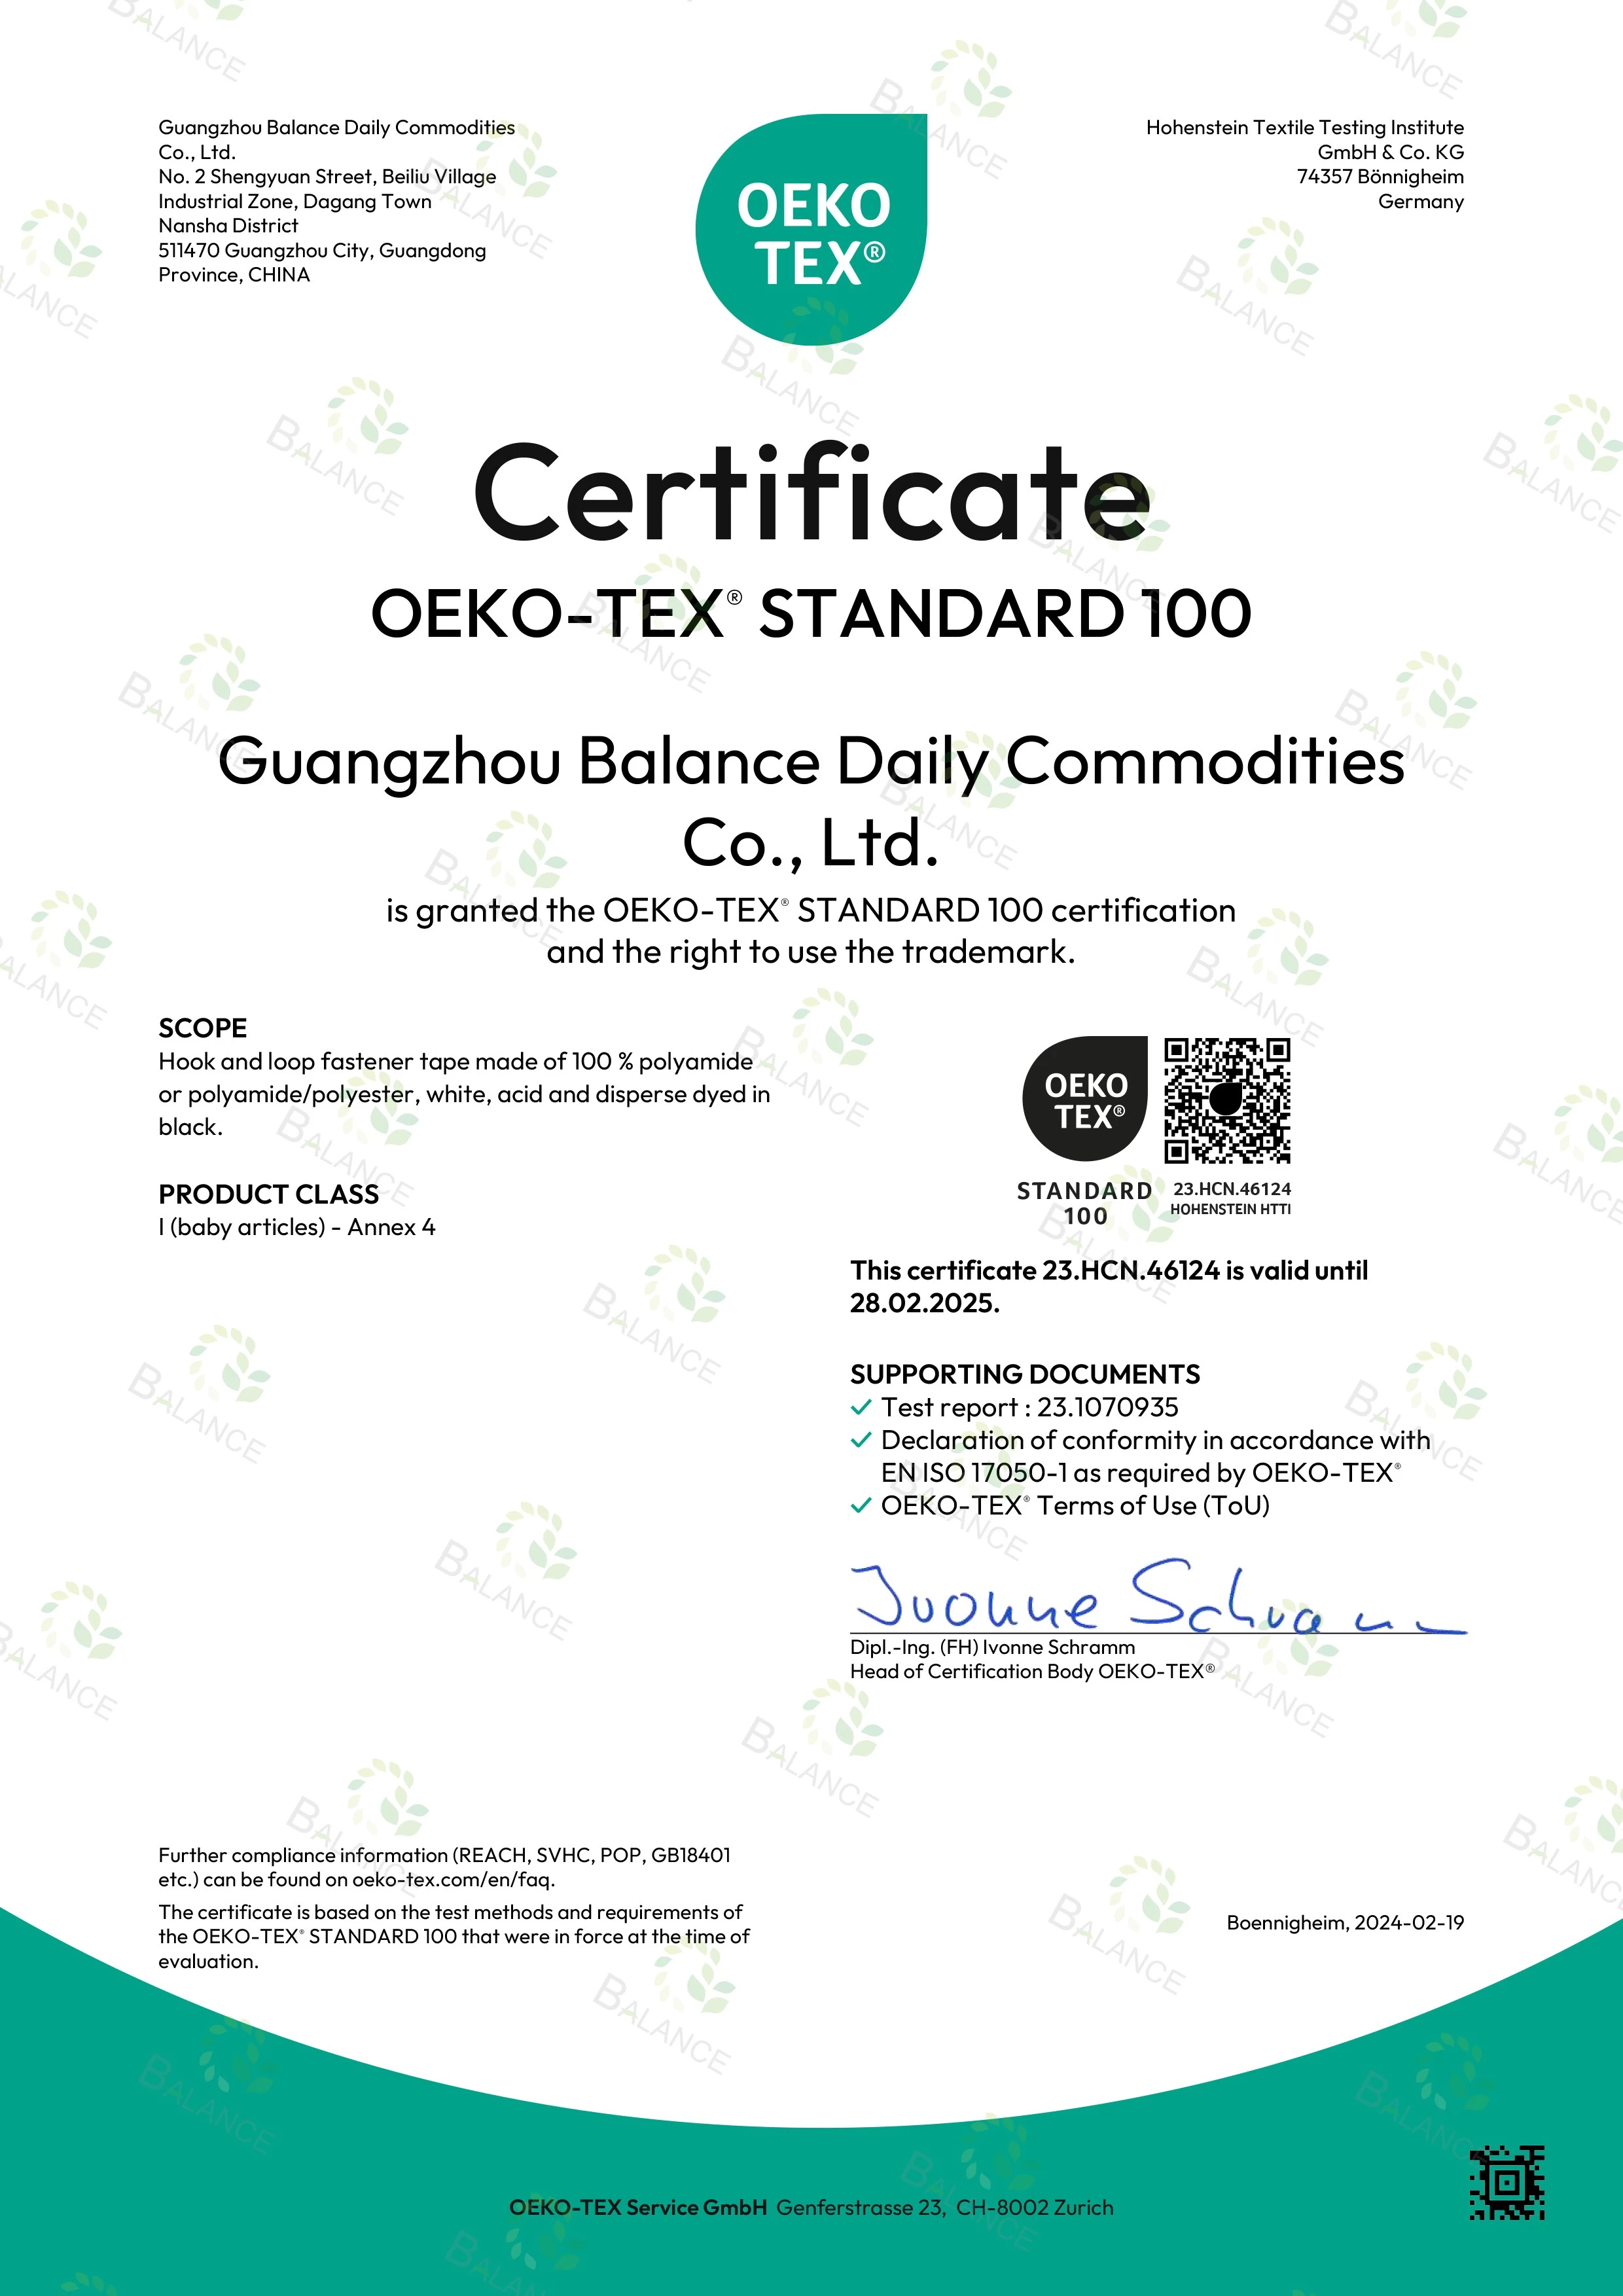 Opwindend nieuws! Onze klittenbanden hebben de OEKO-TEX' STANDARD 100-certificering behaald